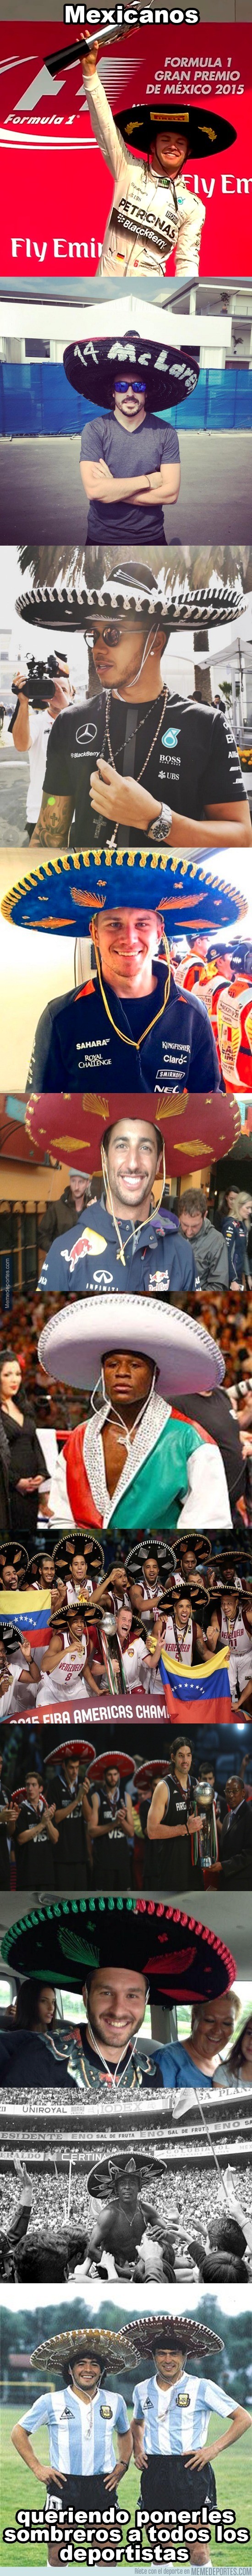 724092 - Mexicanos y su manía de ponerles sombreros a todos los deportistas